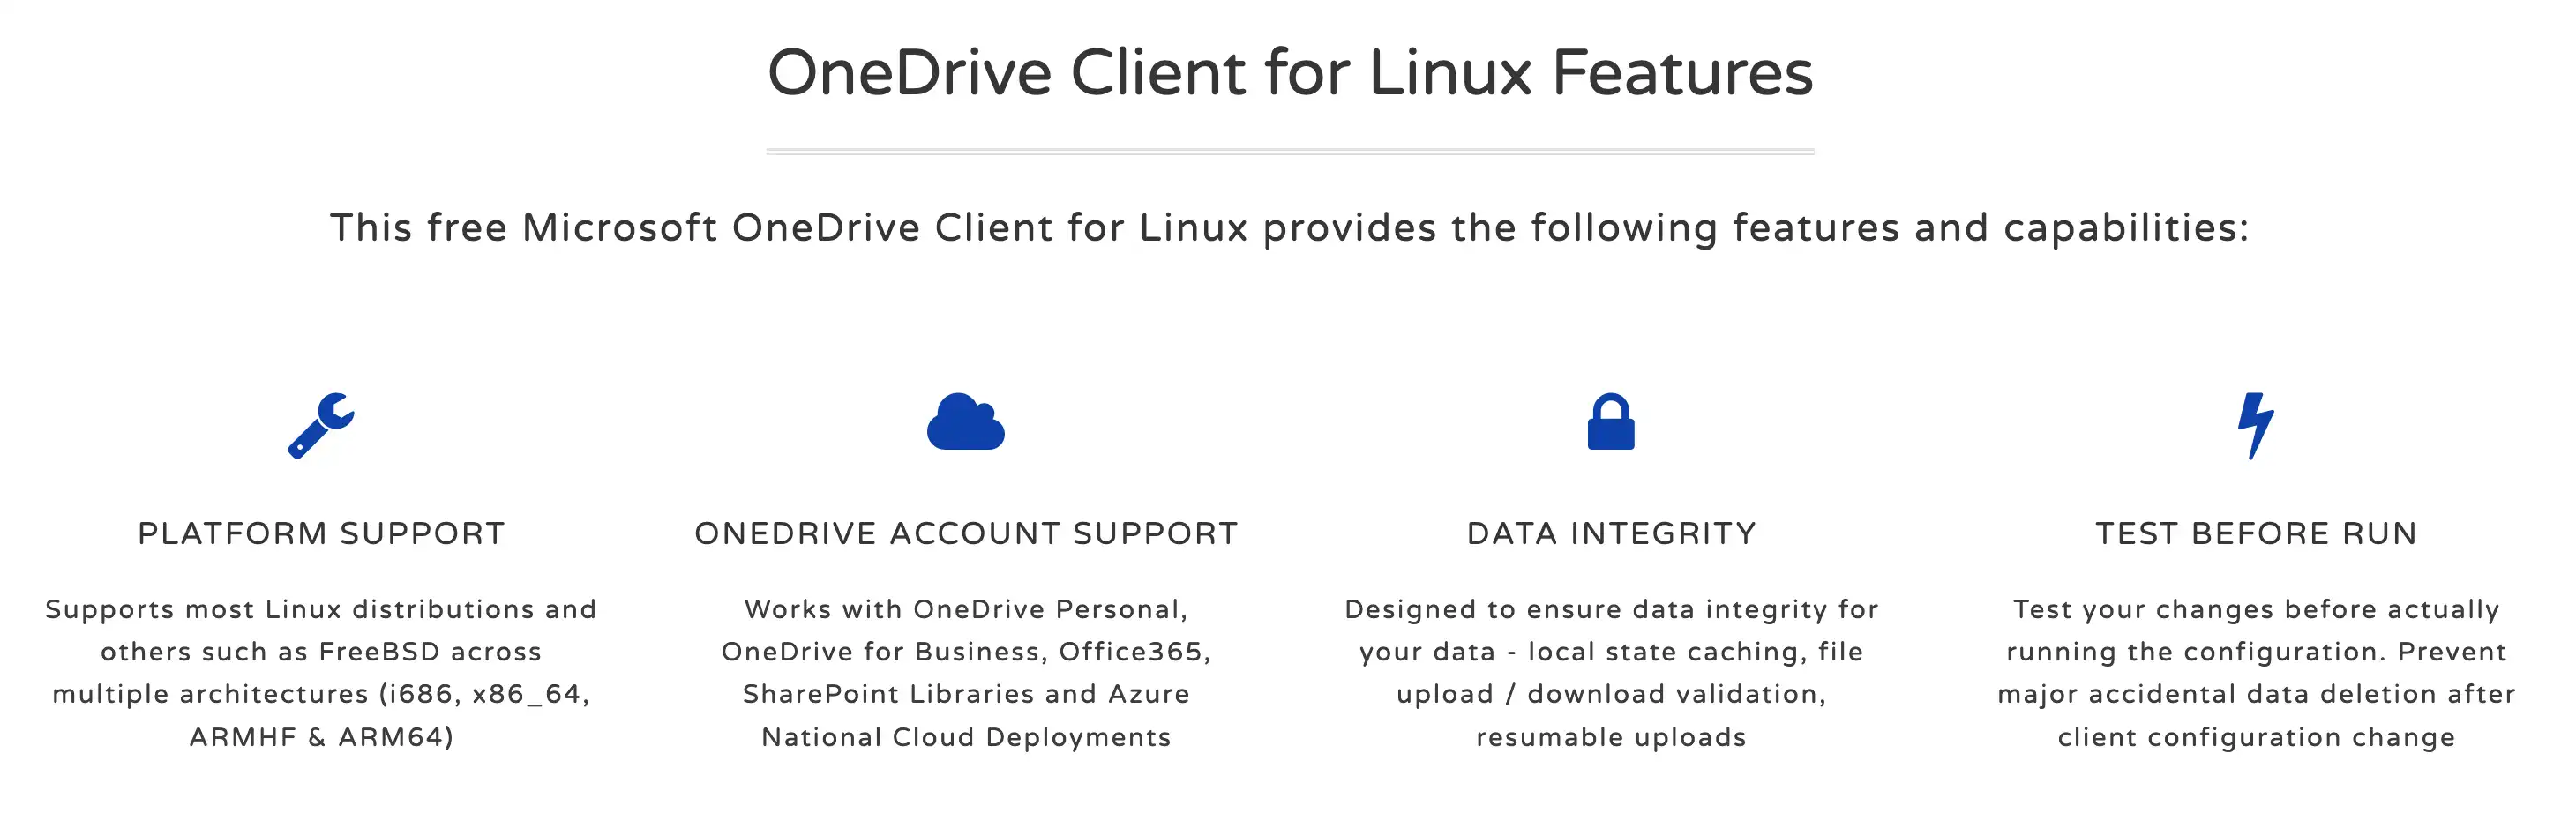 הורד את כלי האינטרנט או אפליקציית האינטרנט OneDrive Client עבור Linux